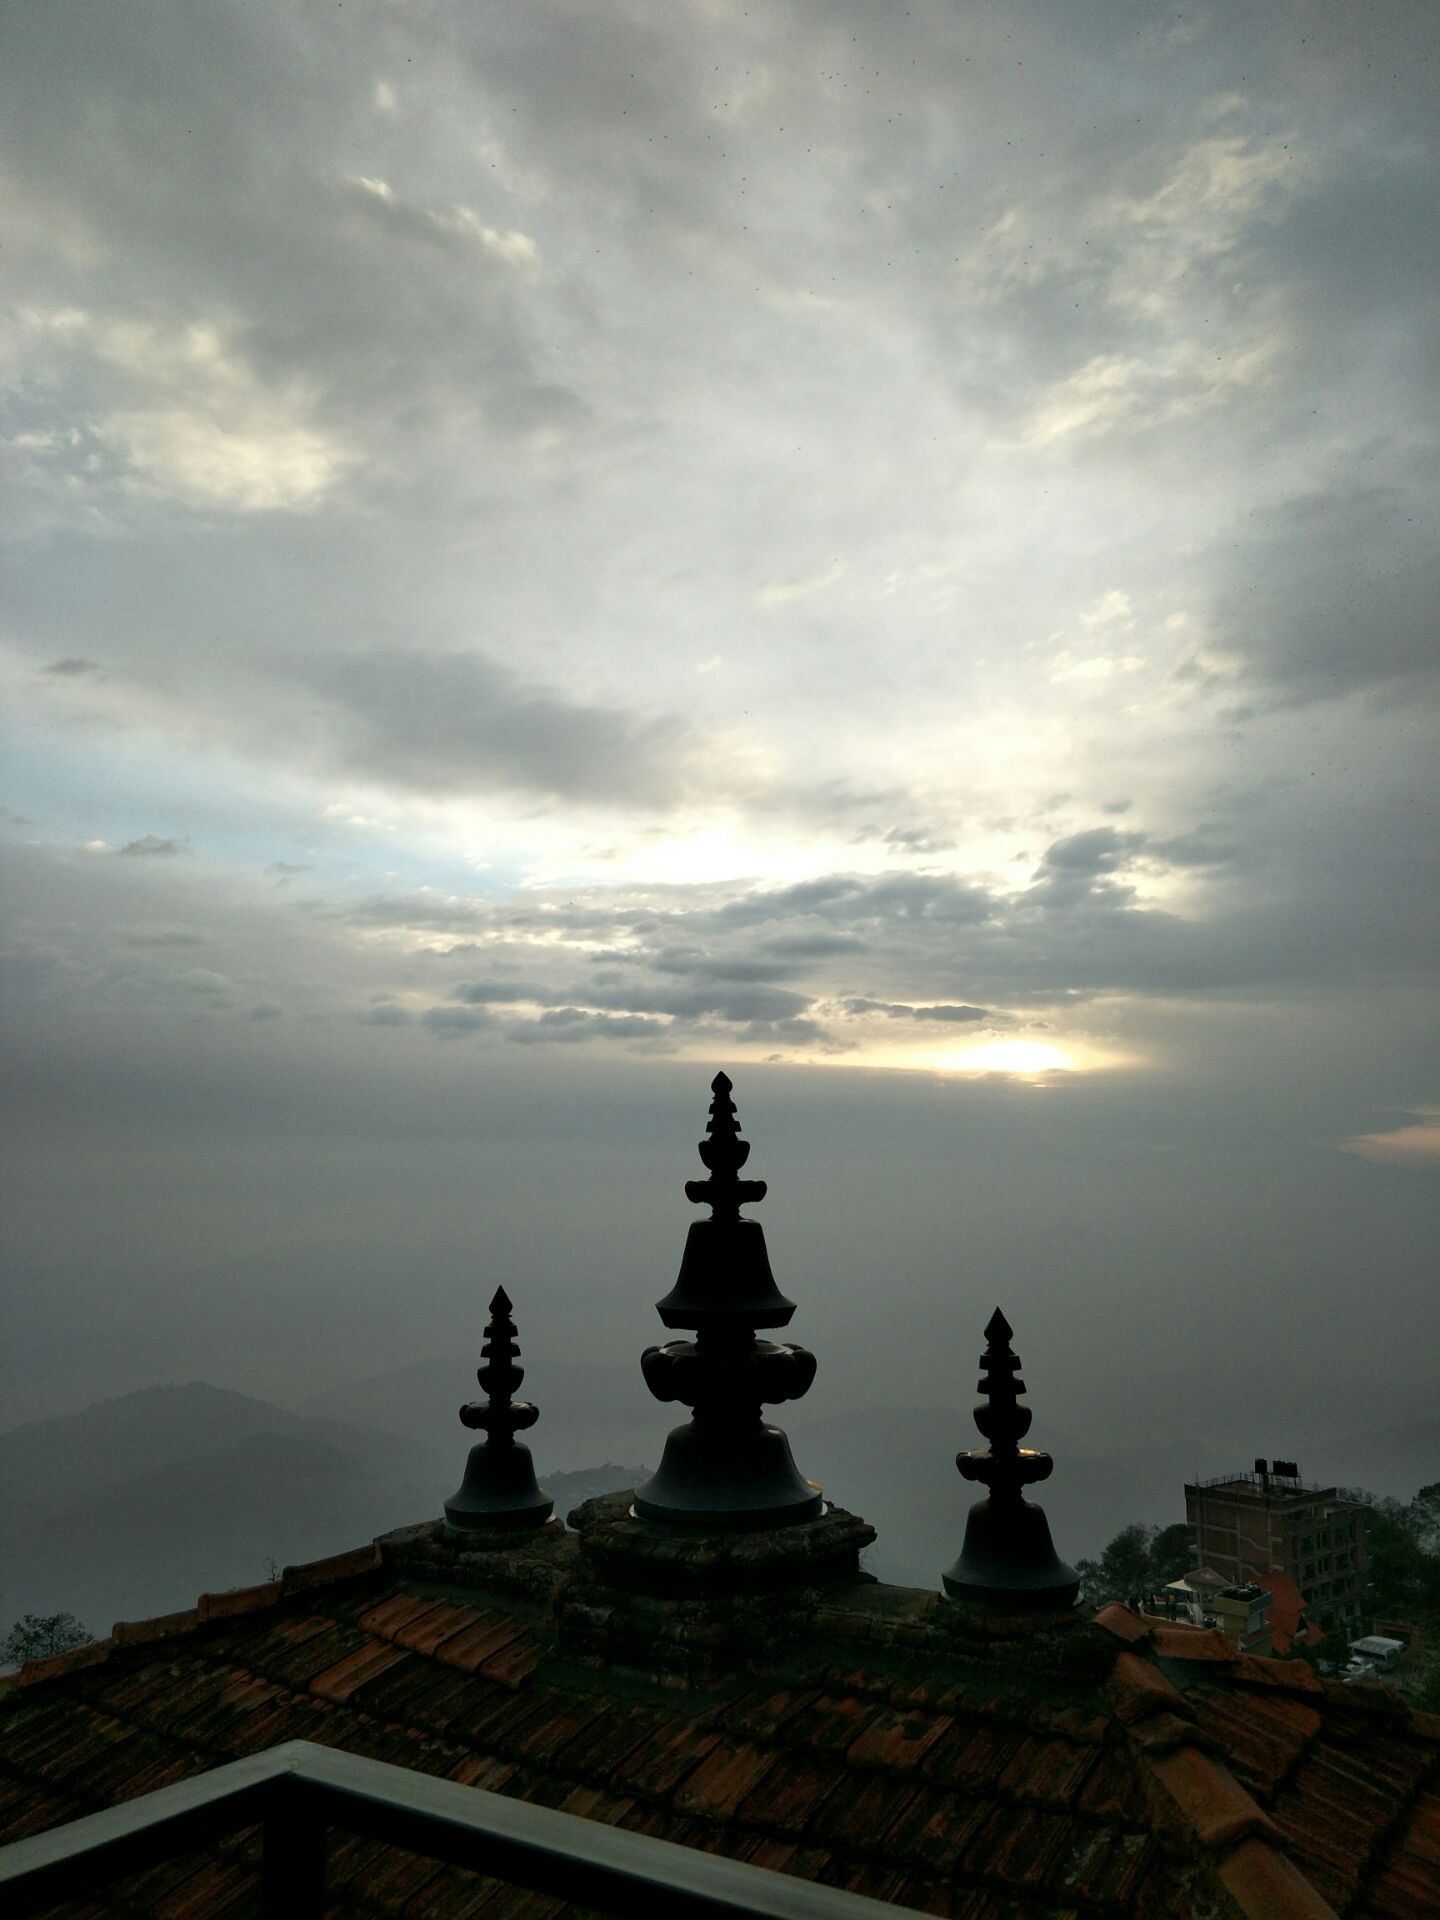 纳加轮特，尼泊尔之旅的最后一站，这是山顶的一家别墅酒店。据说65刀一晚，一定要来住住，就在别墅顶楼可